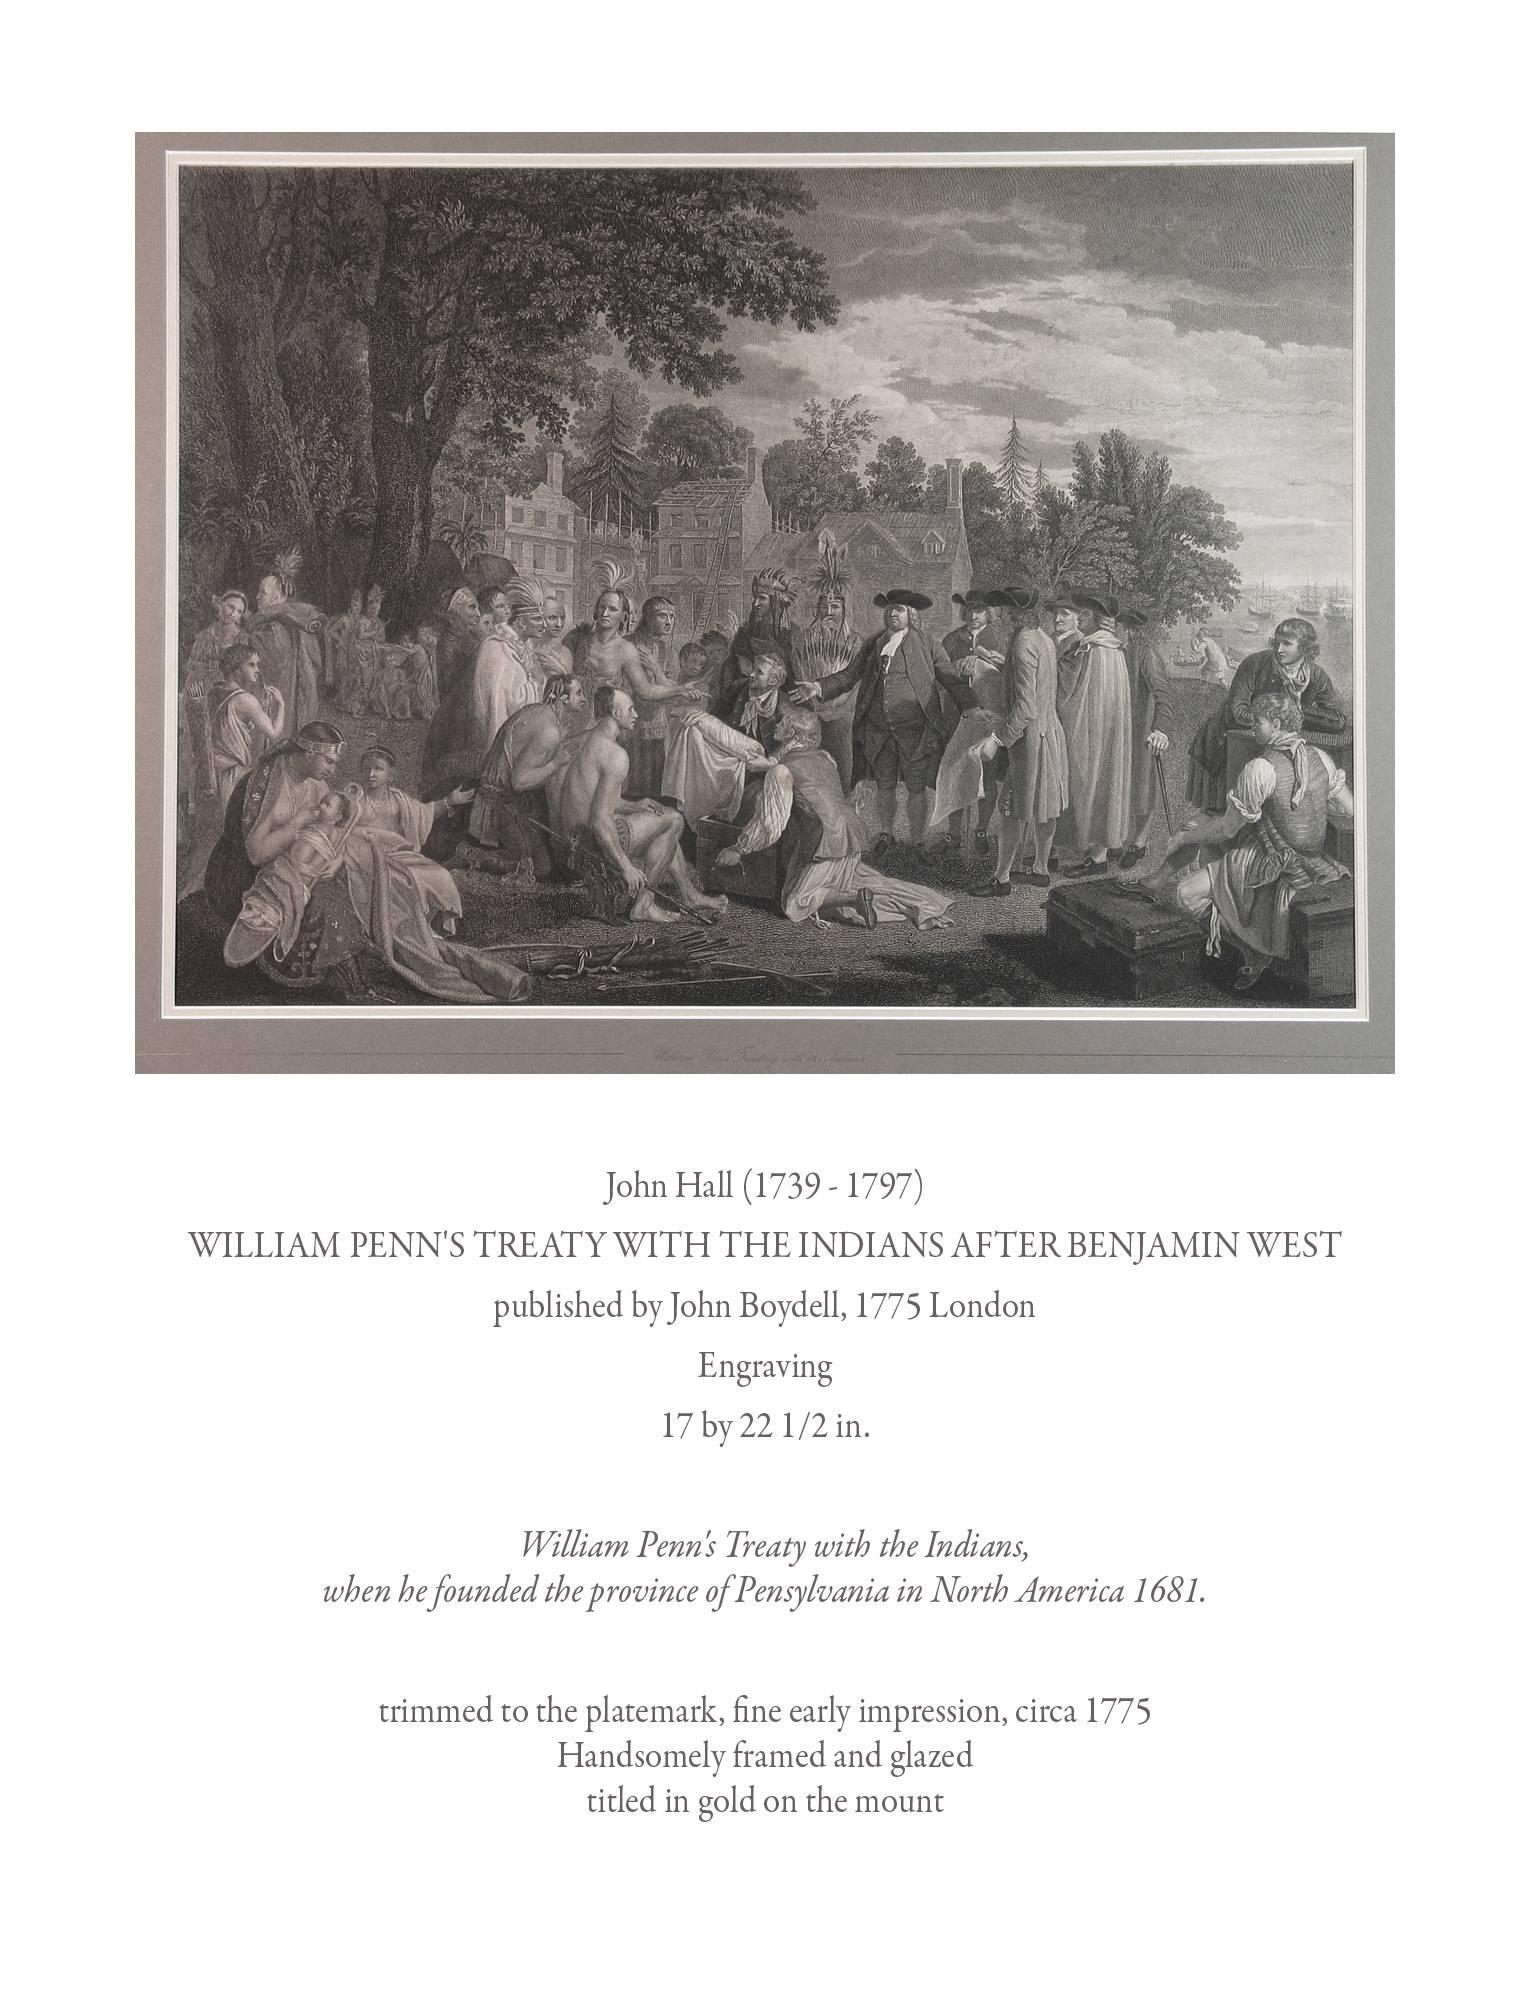 John Hall (1739-1797) William Penn's Treaty With The Indians After Benjamin West, Herausgegeben von John Boydell, 1775 London, Kupferstich 17